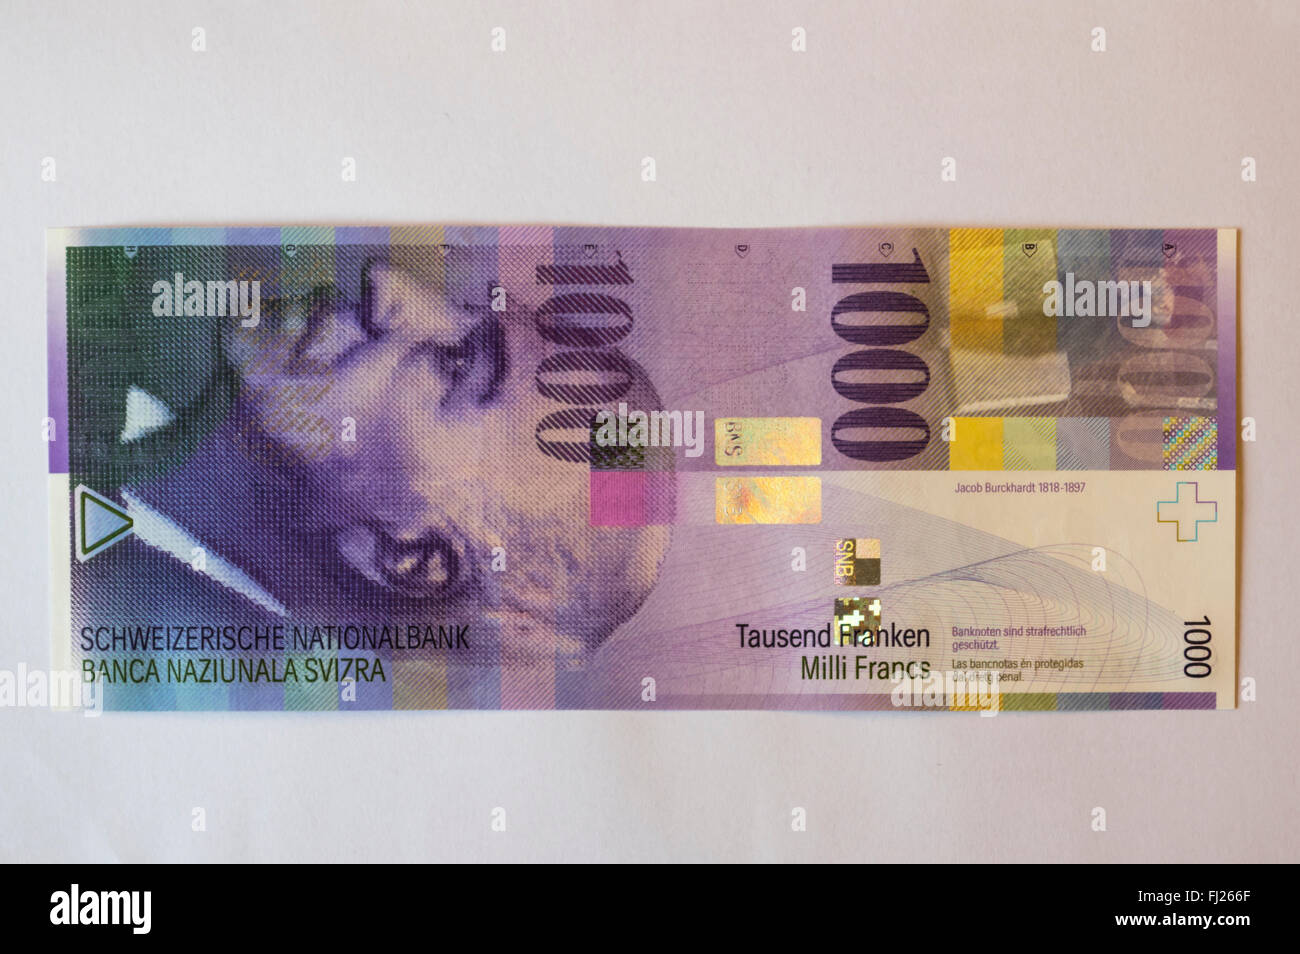 1000 Schweizer Franken Banknote auf weißem Hintergrund. Die lila Hinweis zeigt ein Porträt von Jacob Burckhardt. Stockfoto